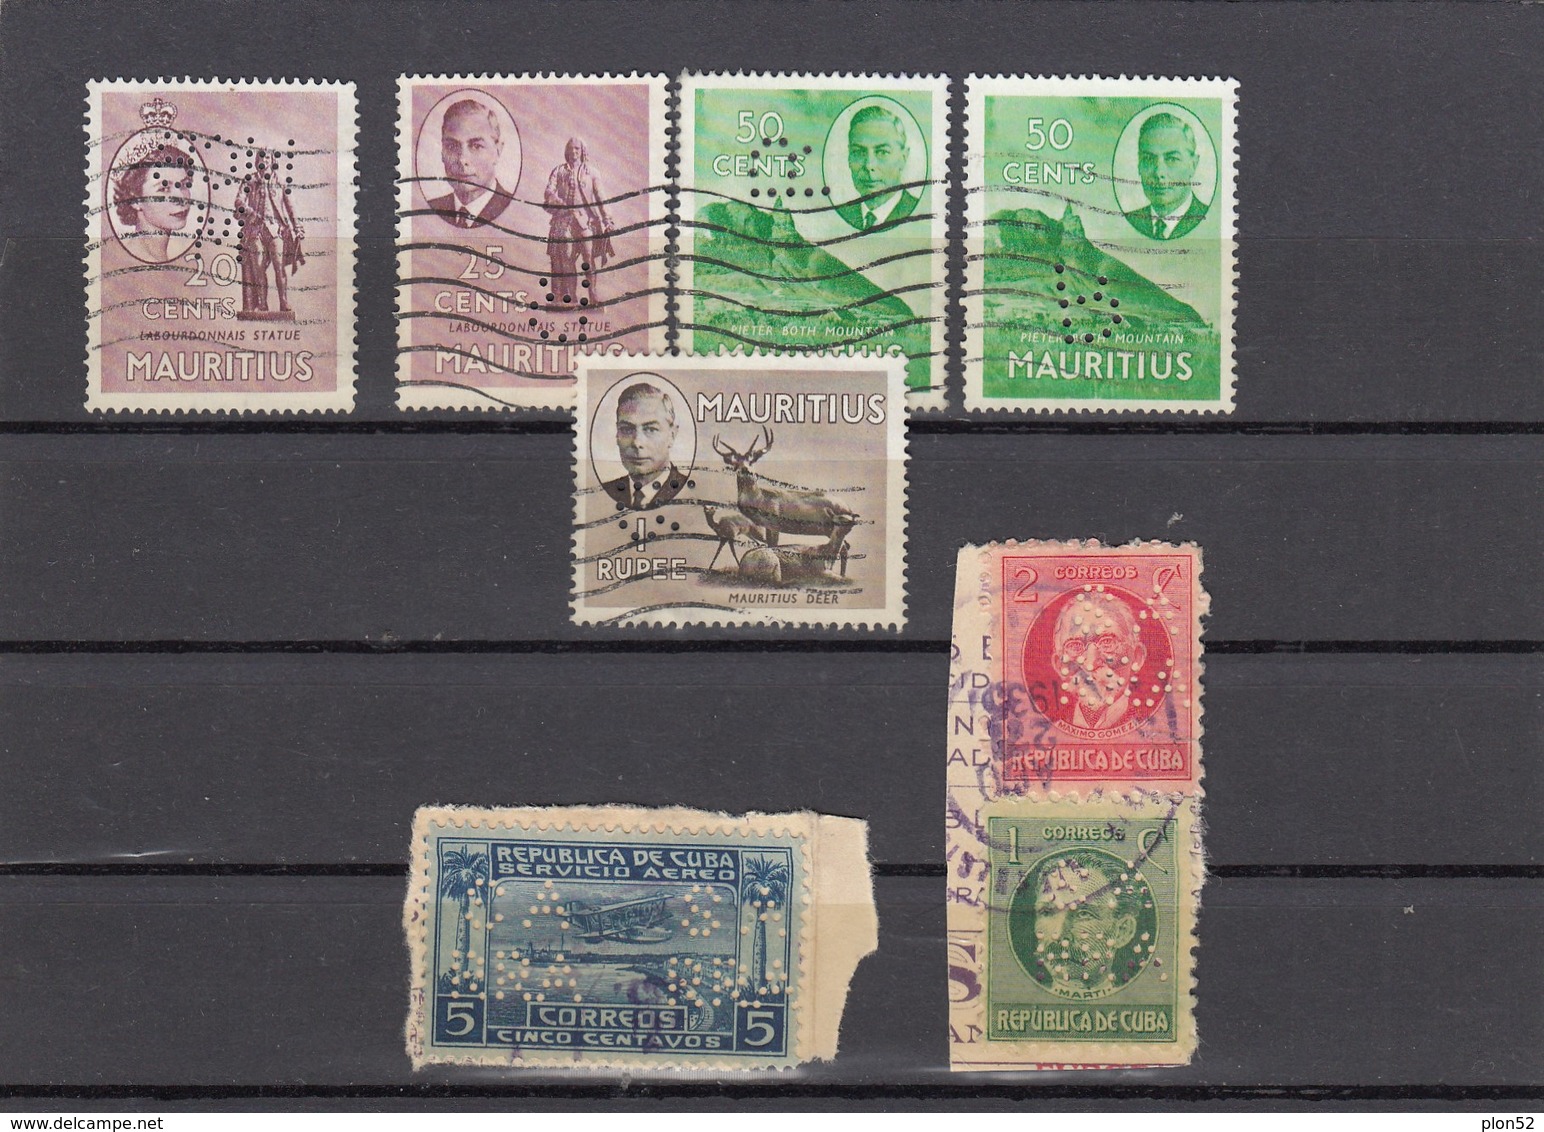 11561-LOTTICINO DI N°. 7 FRANCOBOLLI PERFIN - USATI - MAURITIUS-CUBA - Lots & Kiloware (mixtures) - Max. 999 Stamps